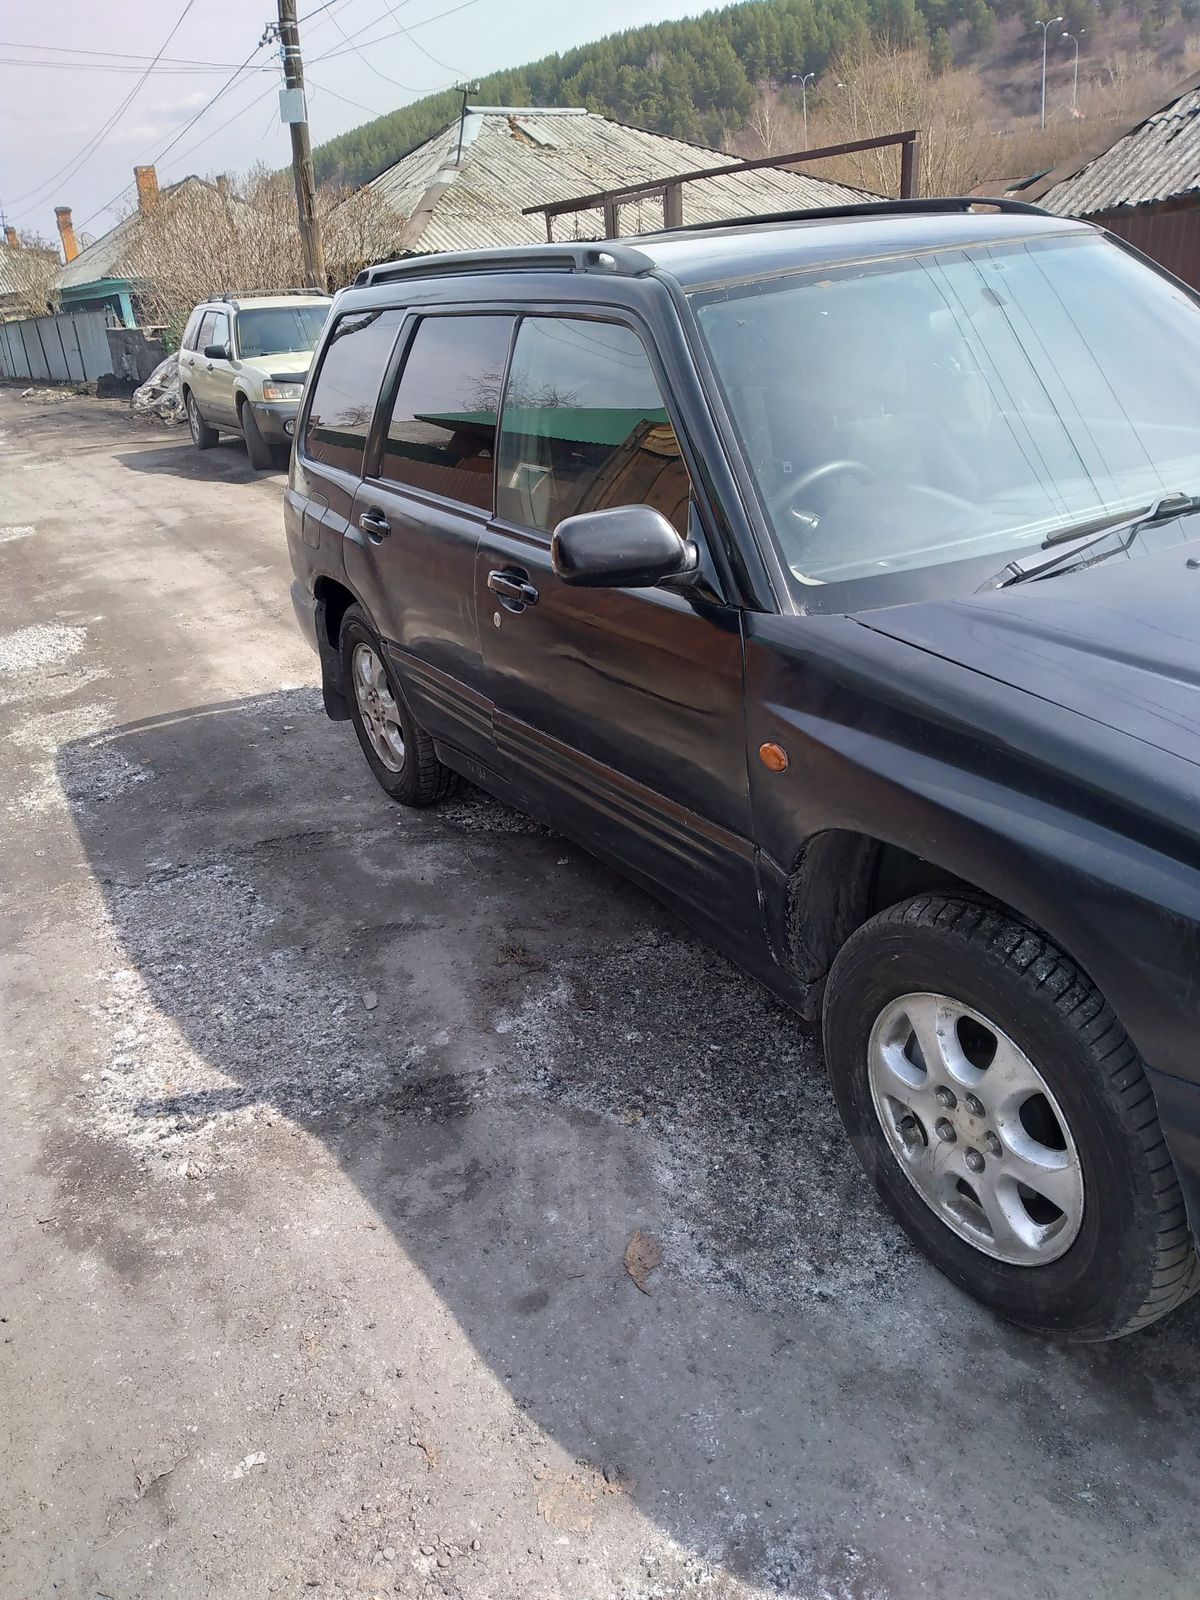 Subaru Forester 1997 в Новокузнецке, Здесь торгуюсь 230, с